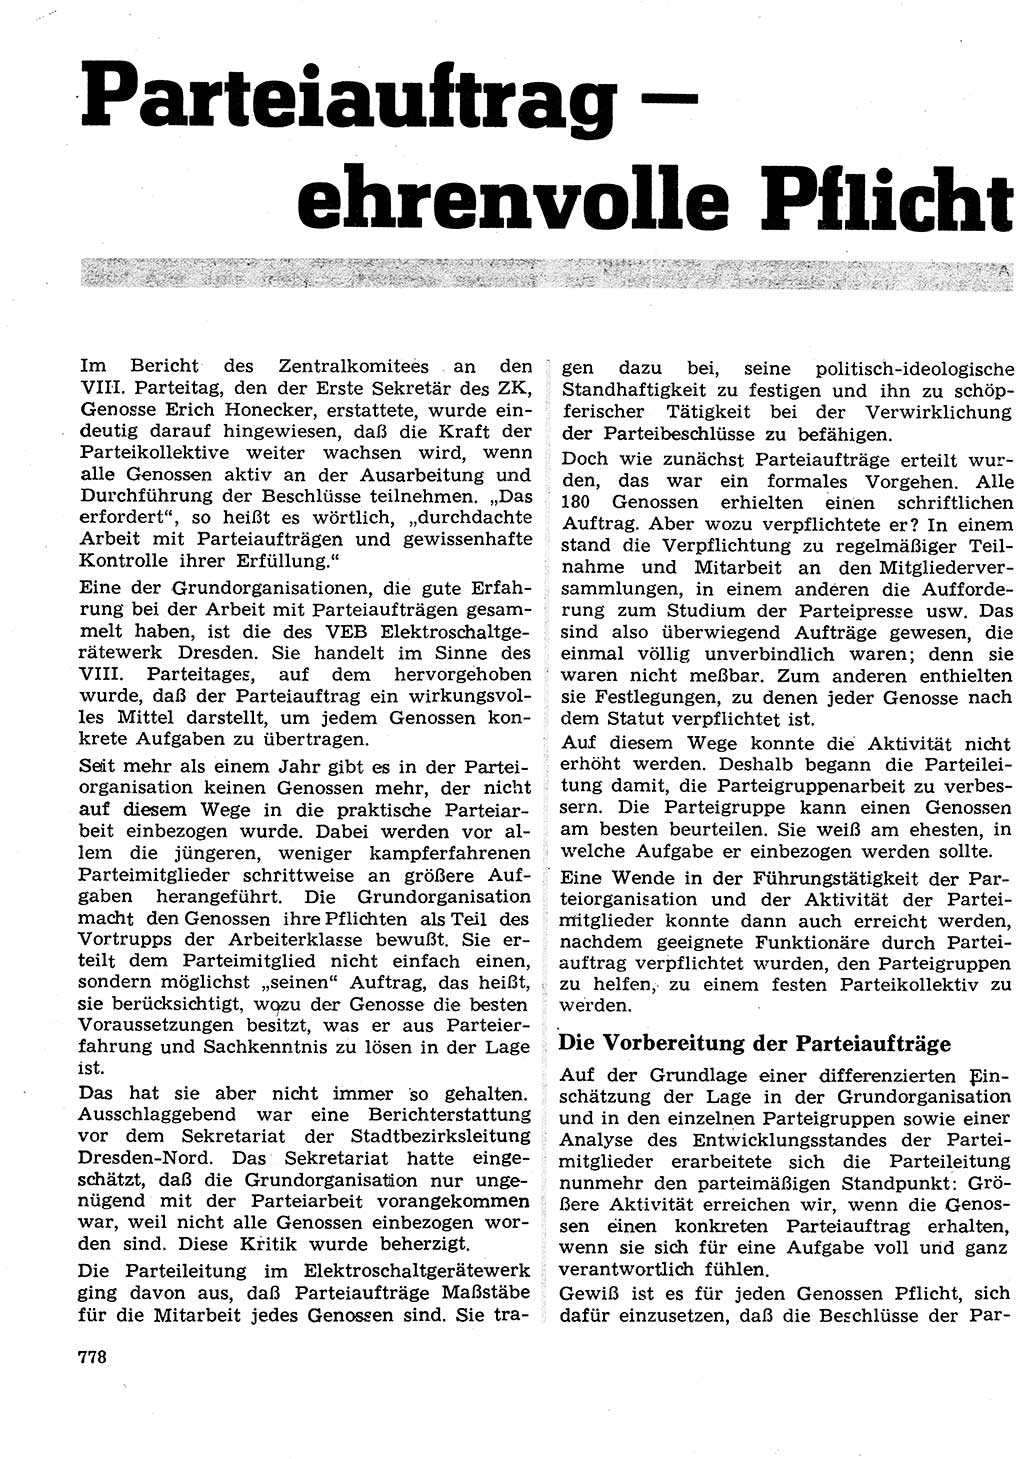 Neuer Weg (NW), Organ des Zentralkomitees (ZK) der SED (Sozialistische Einheitspartei Deutschlands) für Fragen des Parteilebens, 26. Jahrgang [Deutsche Demokratische Republik (DDR)] 1971, Seite 778 (NW ZK SED DDR 1971, S. 778)